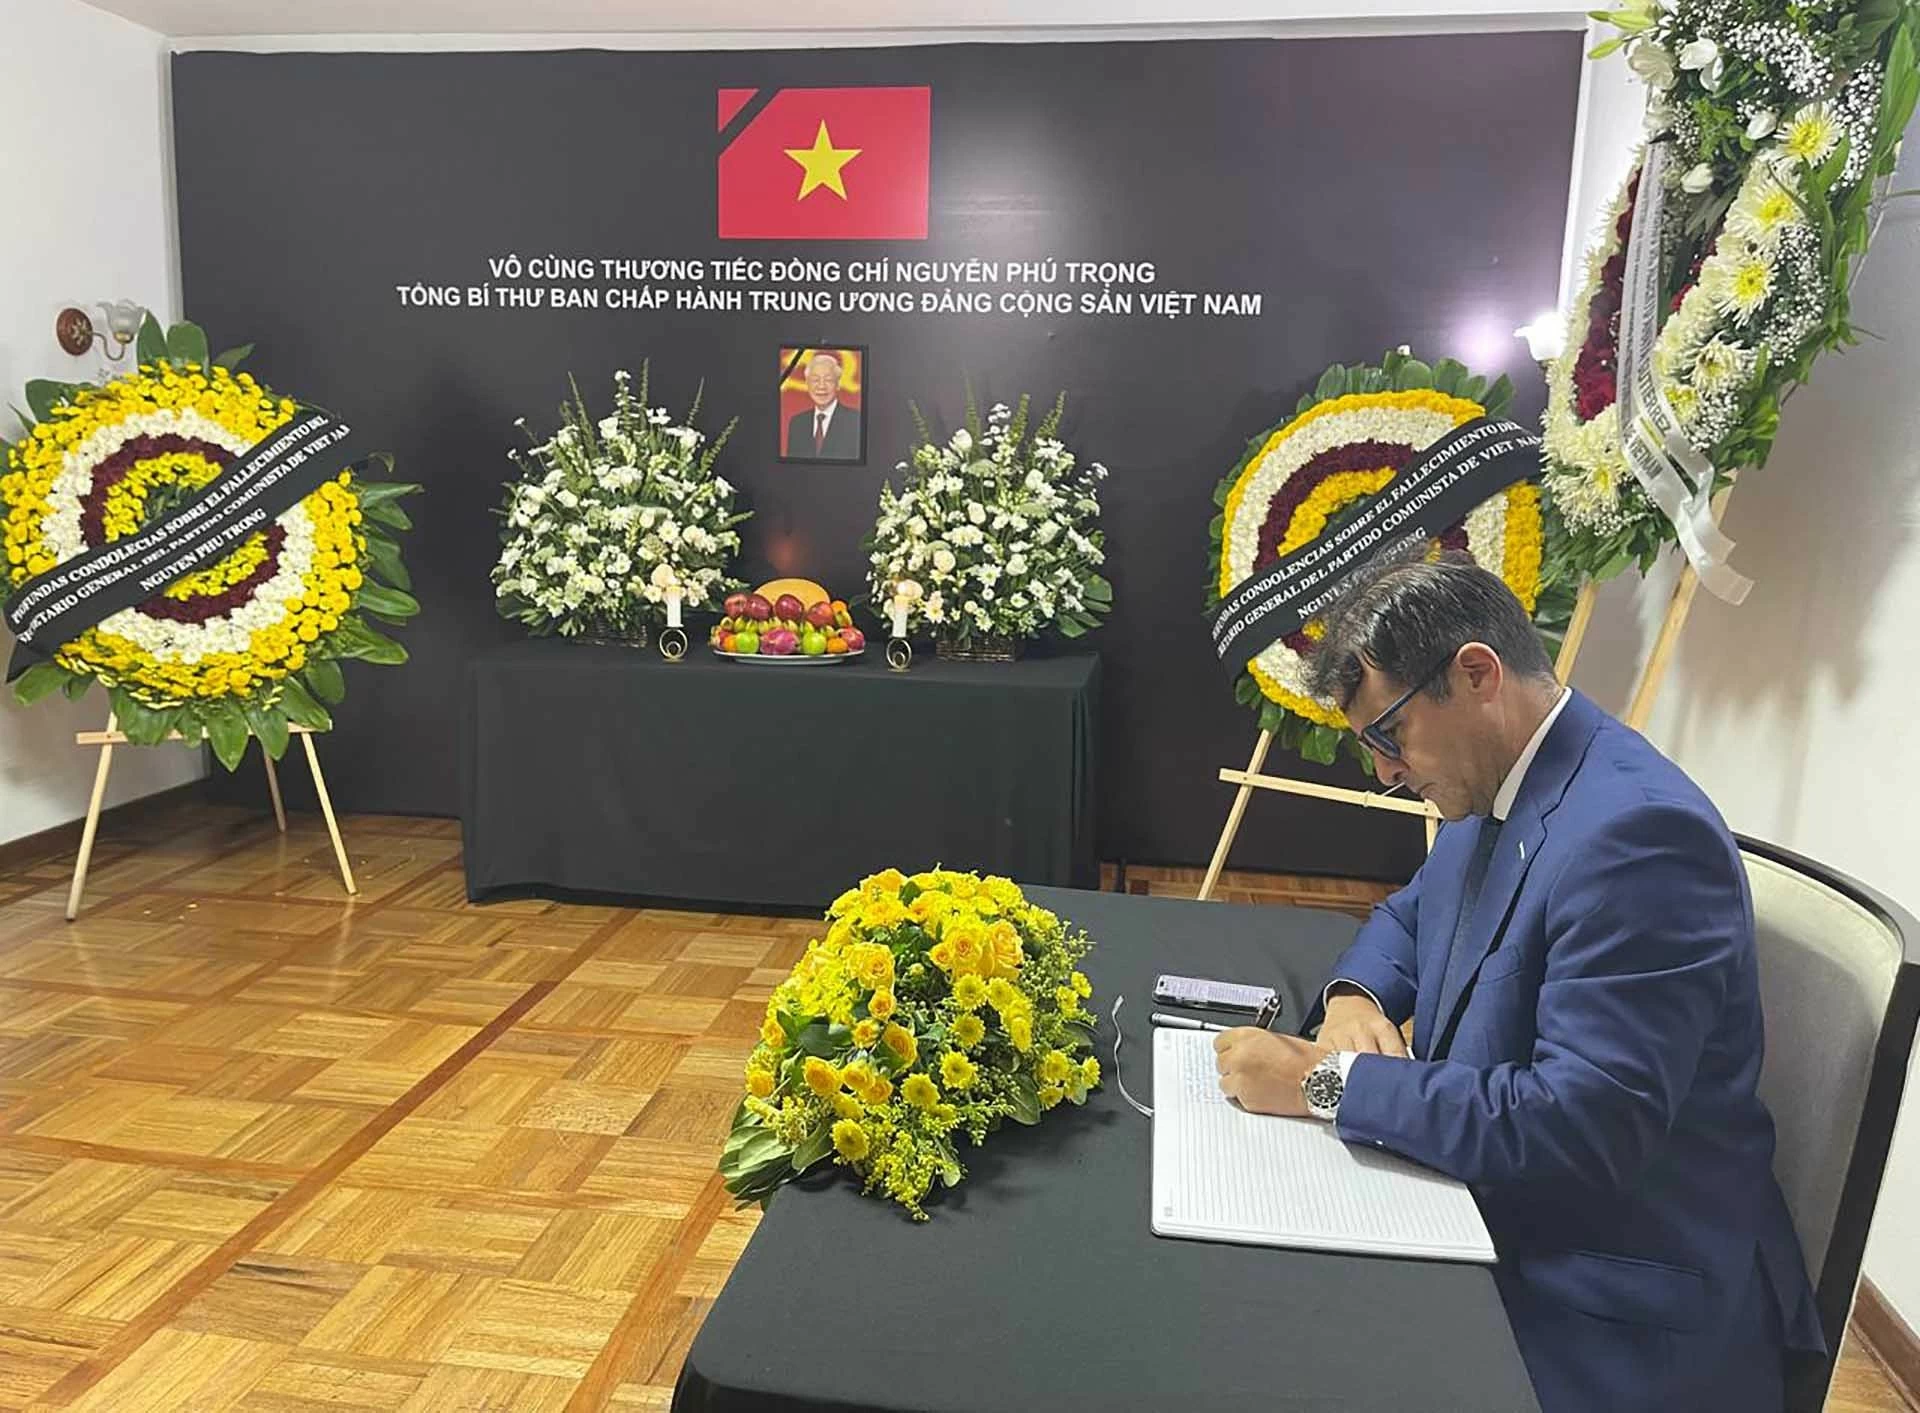 Bạn bè quốc tế và cộng đồng người Việt tại Mexico bày tỏ thương tiếc về sự ra đi của Tổng Bí thư Nguyễn Phú Trọng